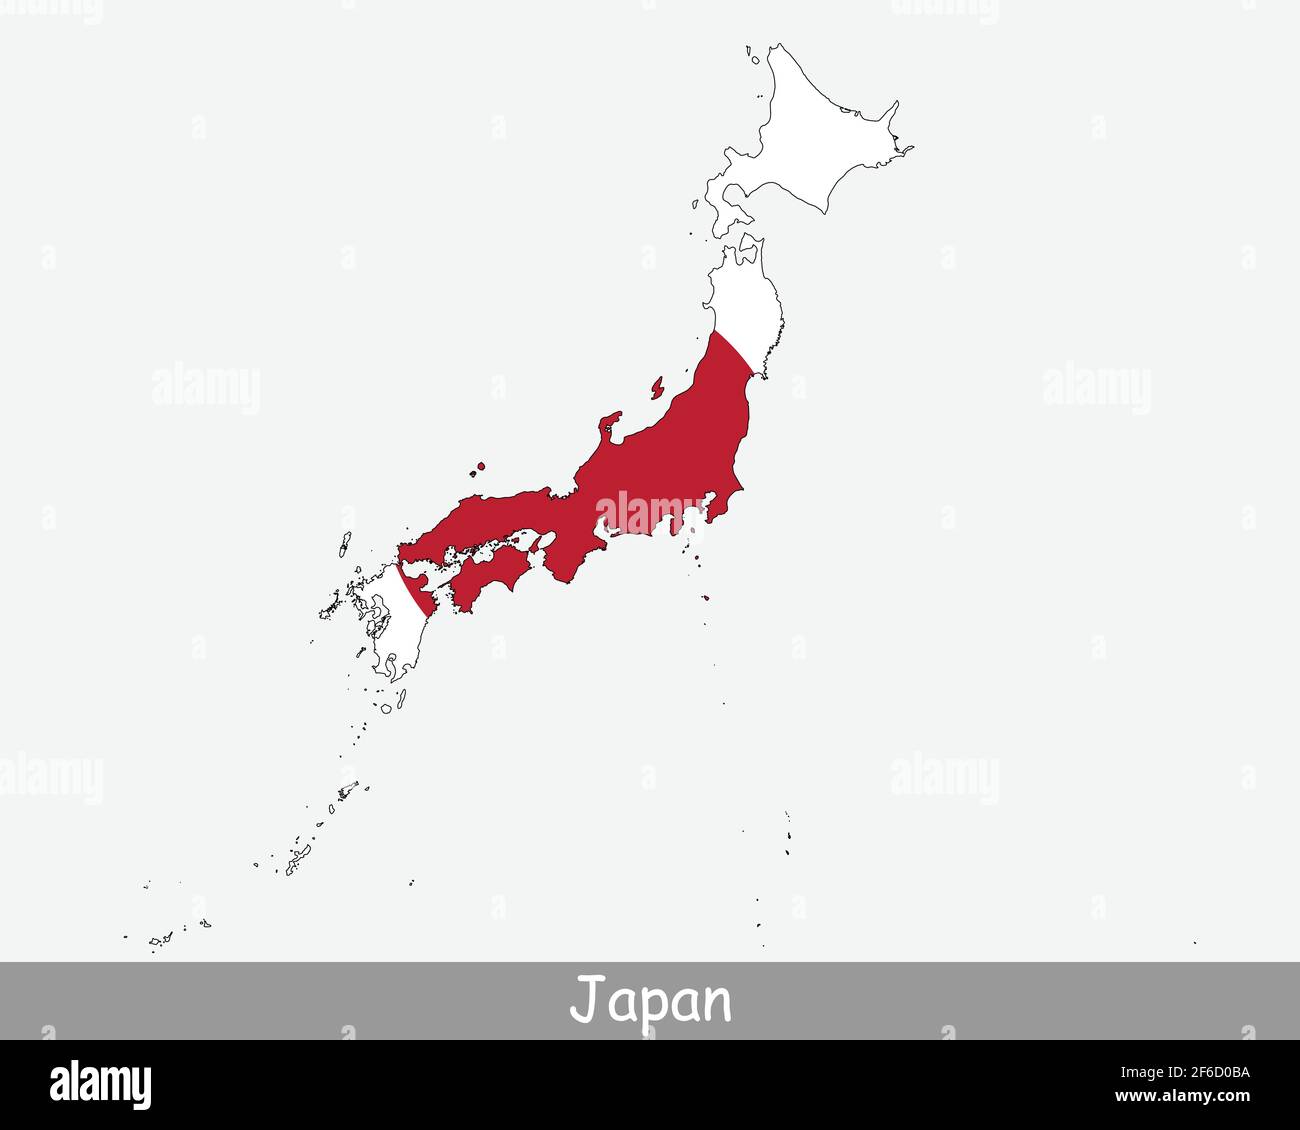 Bandiera della mappa del Giappone. Mappa del Giappone con la bandiera nazionale giapponese isolata su sfondo bianco. Illustrazione vettoriale. Illustrazione Vettoriale